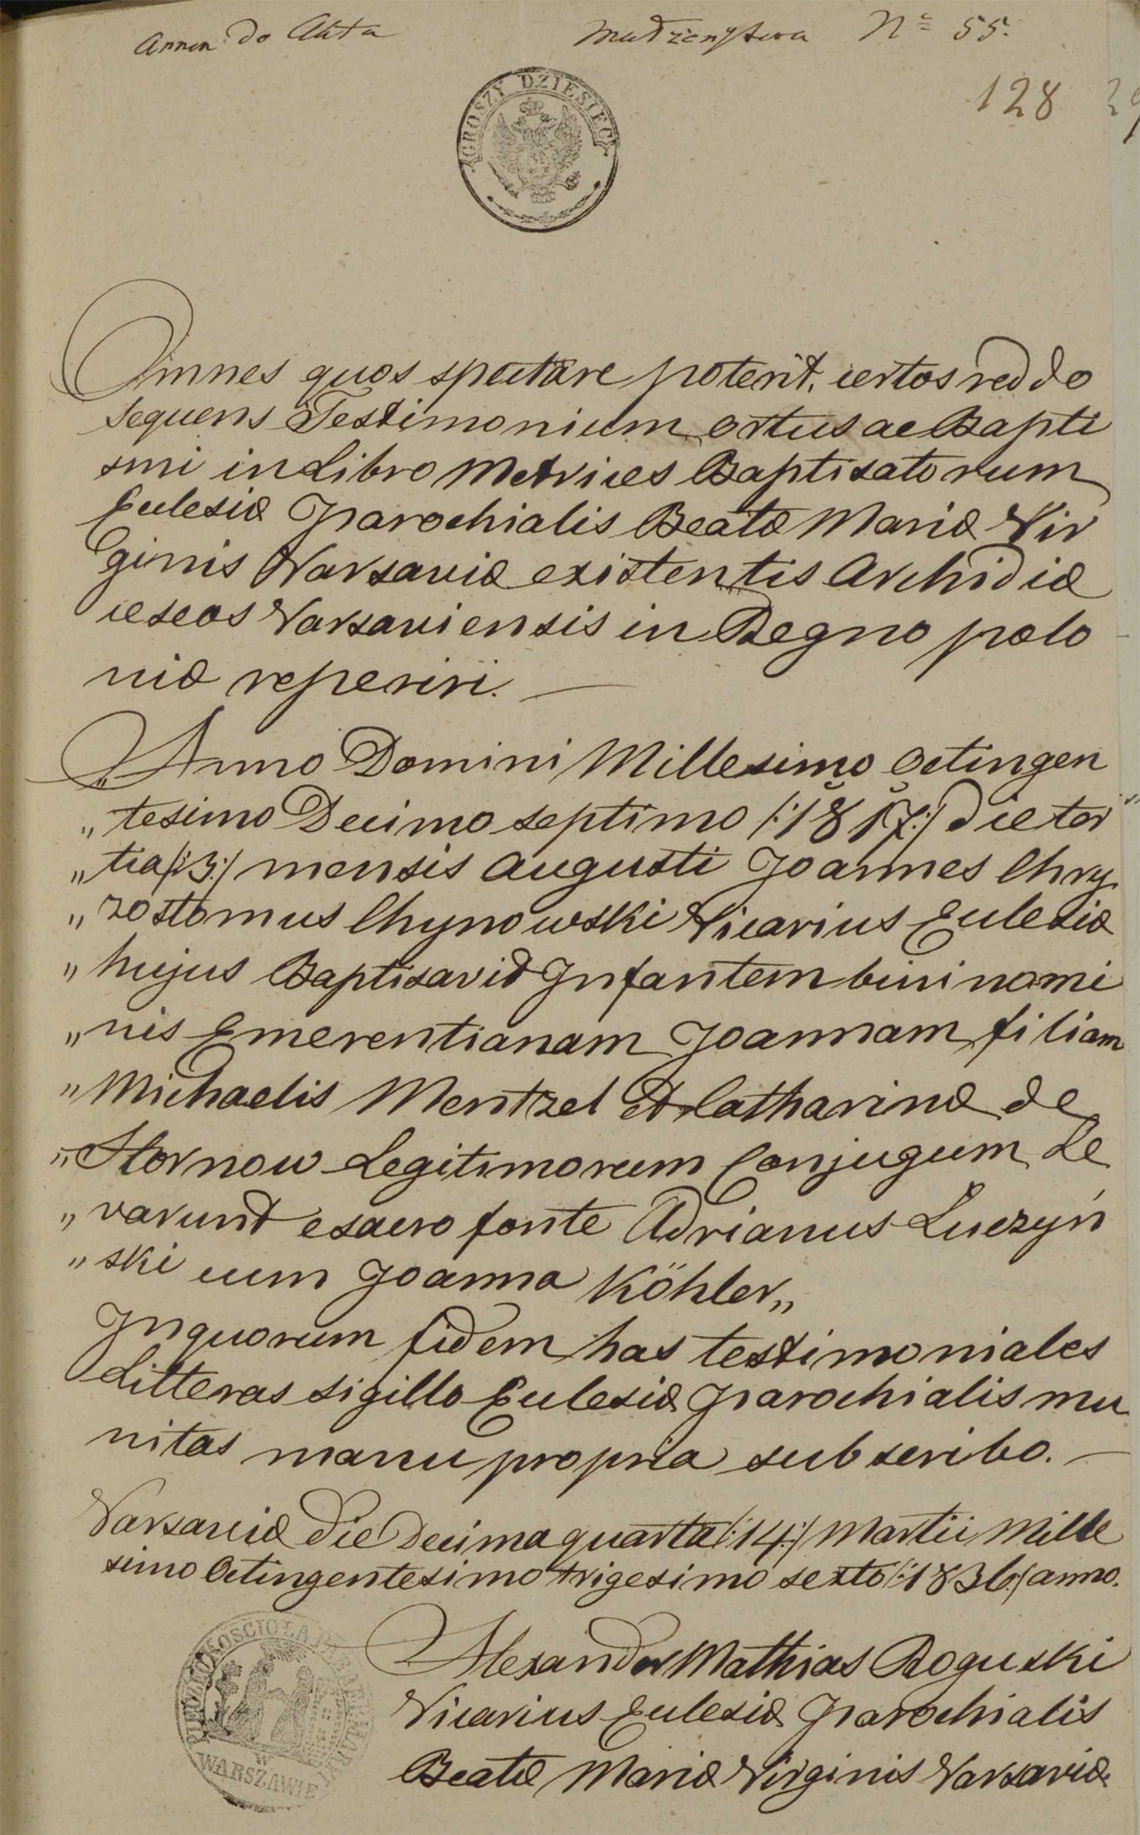 Aneksy do aktu małżeństwa Samuel Gostkowski & Emma Mentzel w dniu 04.04.1836 r. (aneks 3)